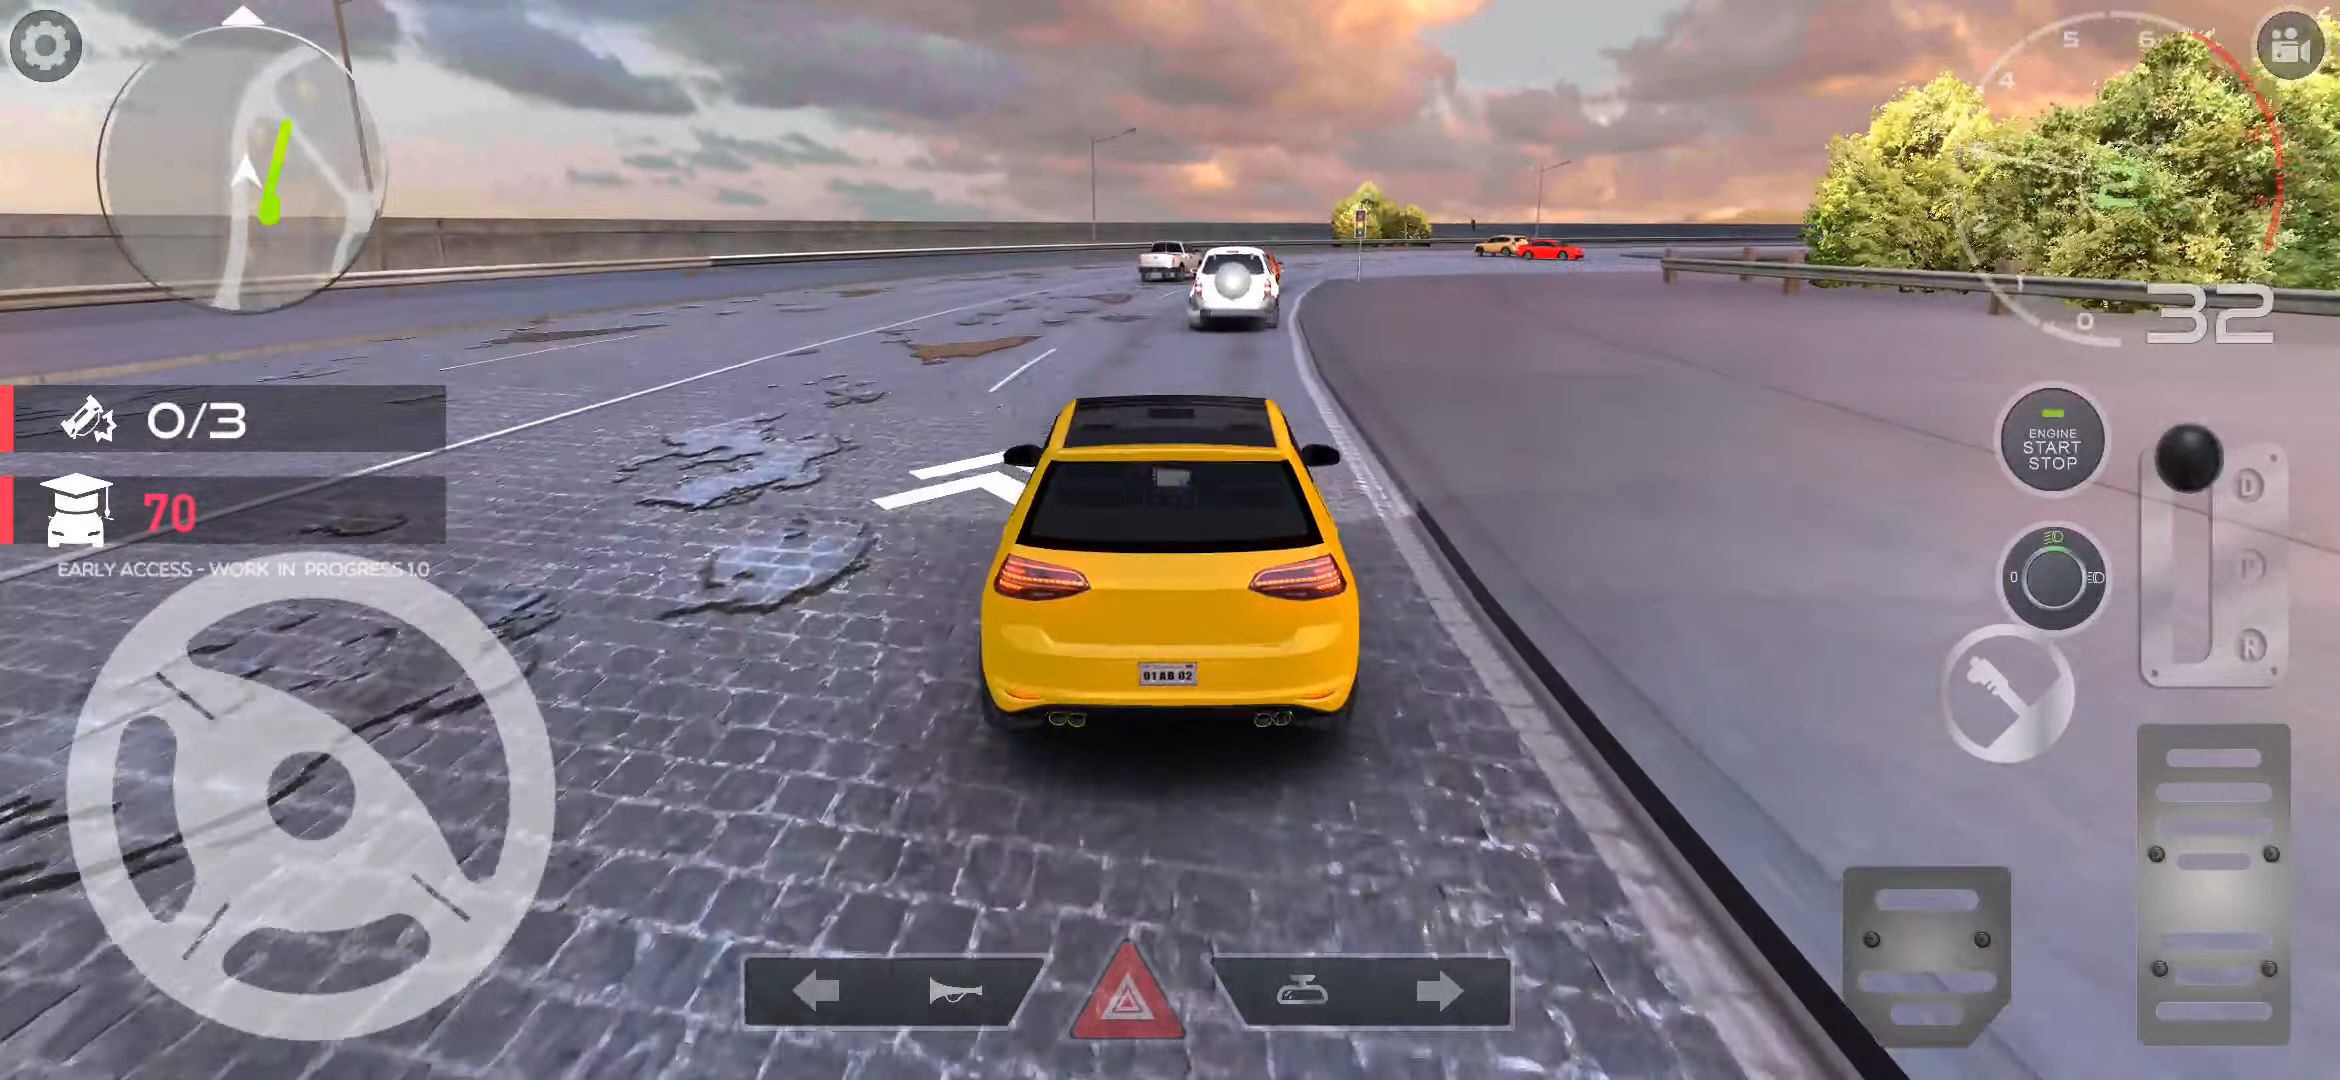 PetrolHead : Traffic Quests - Joyful City Driving captura de tela 1